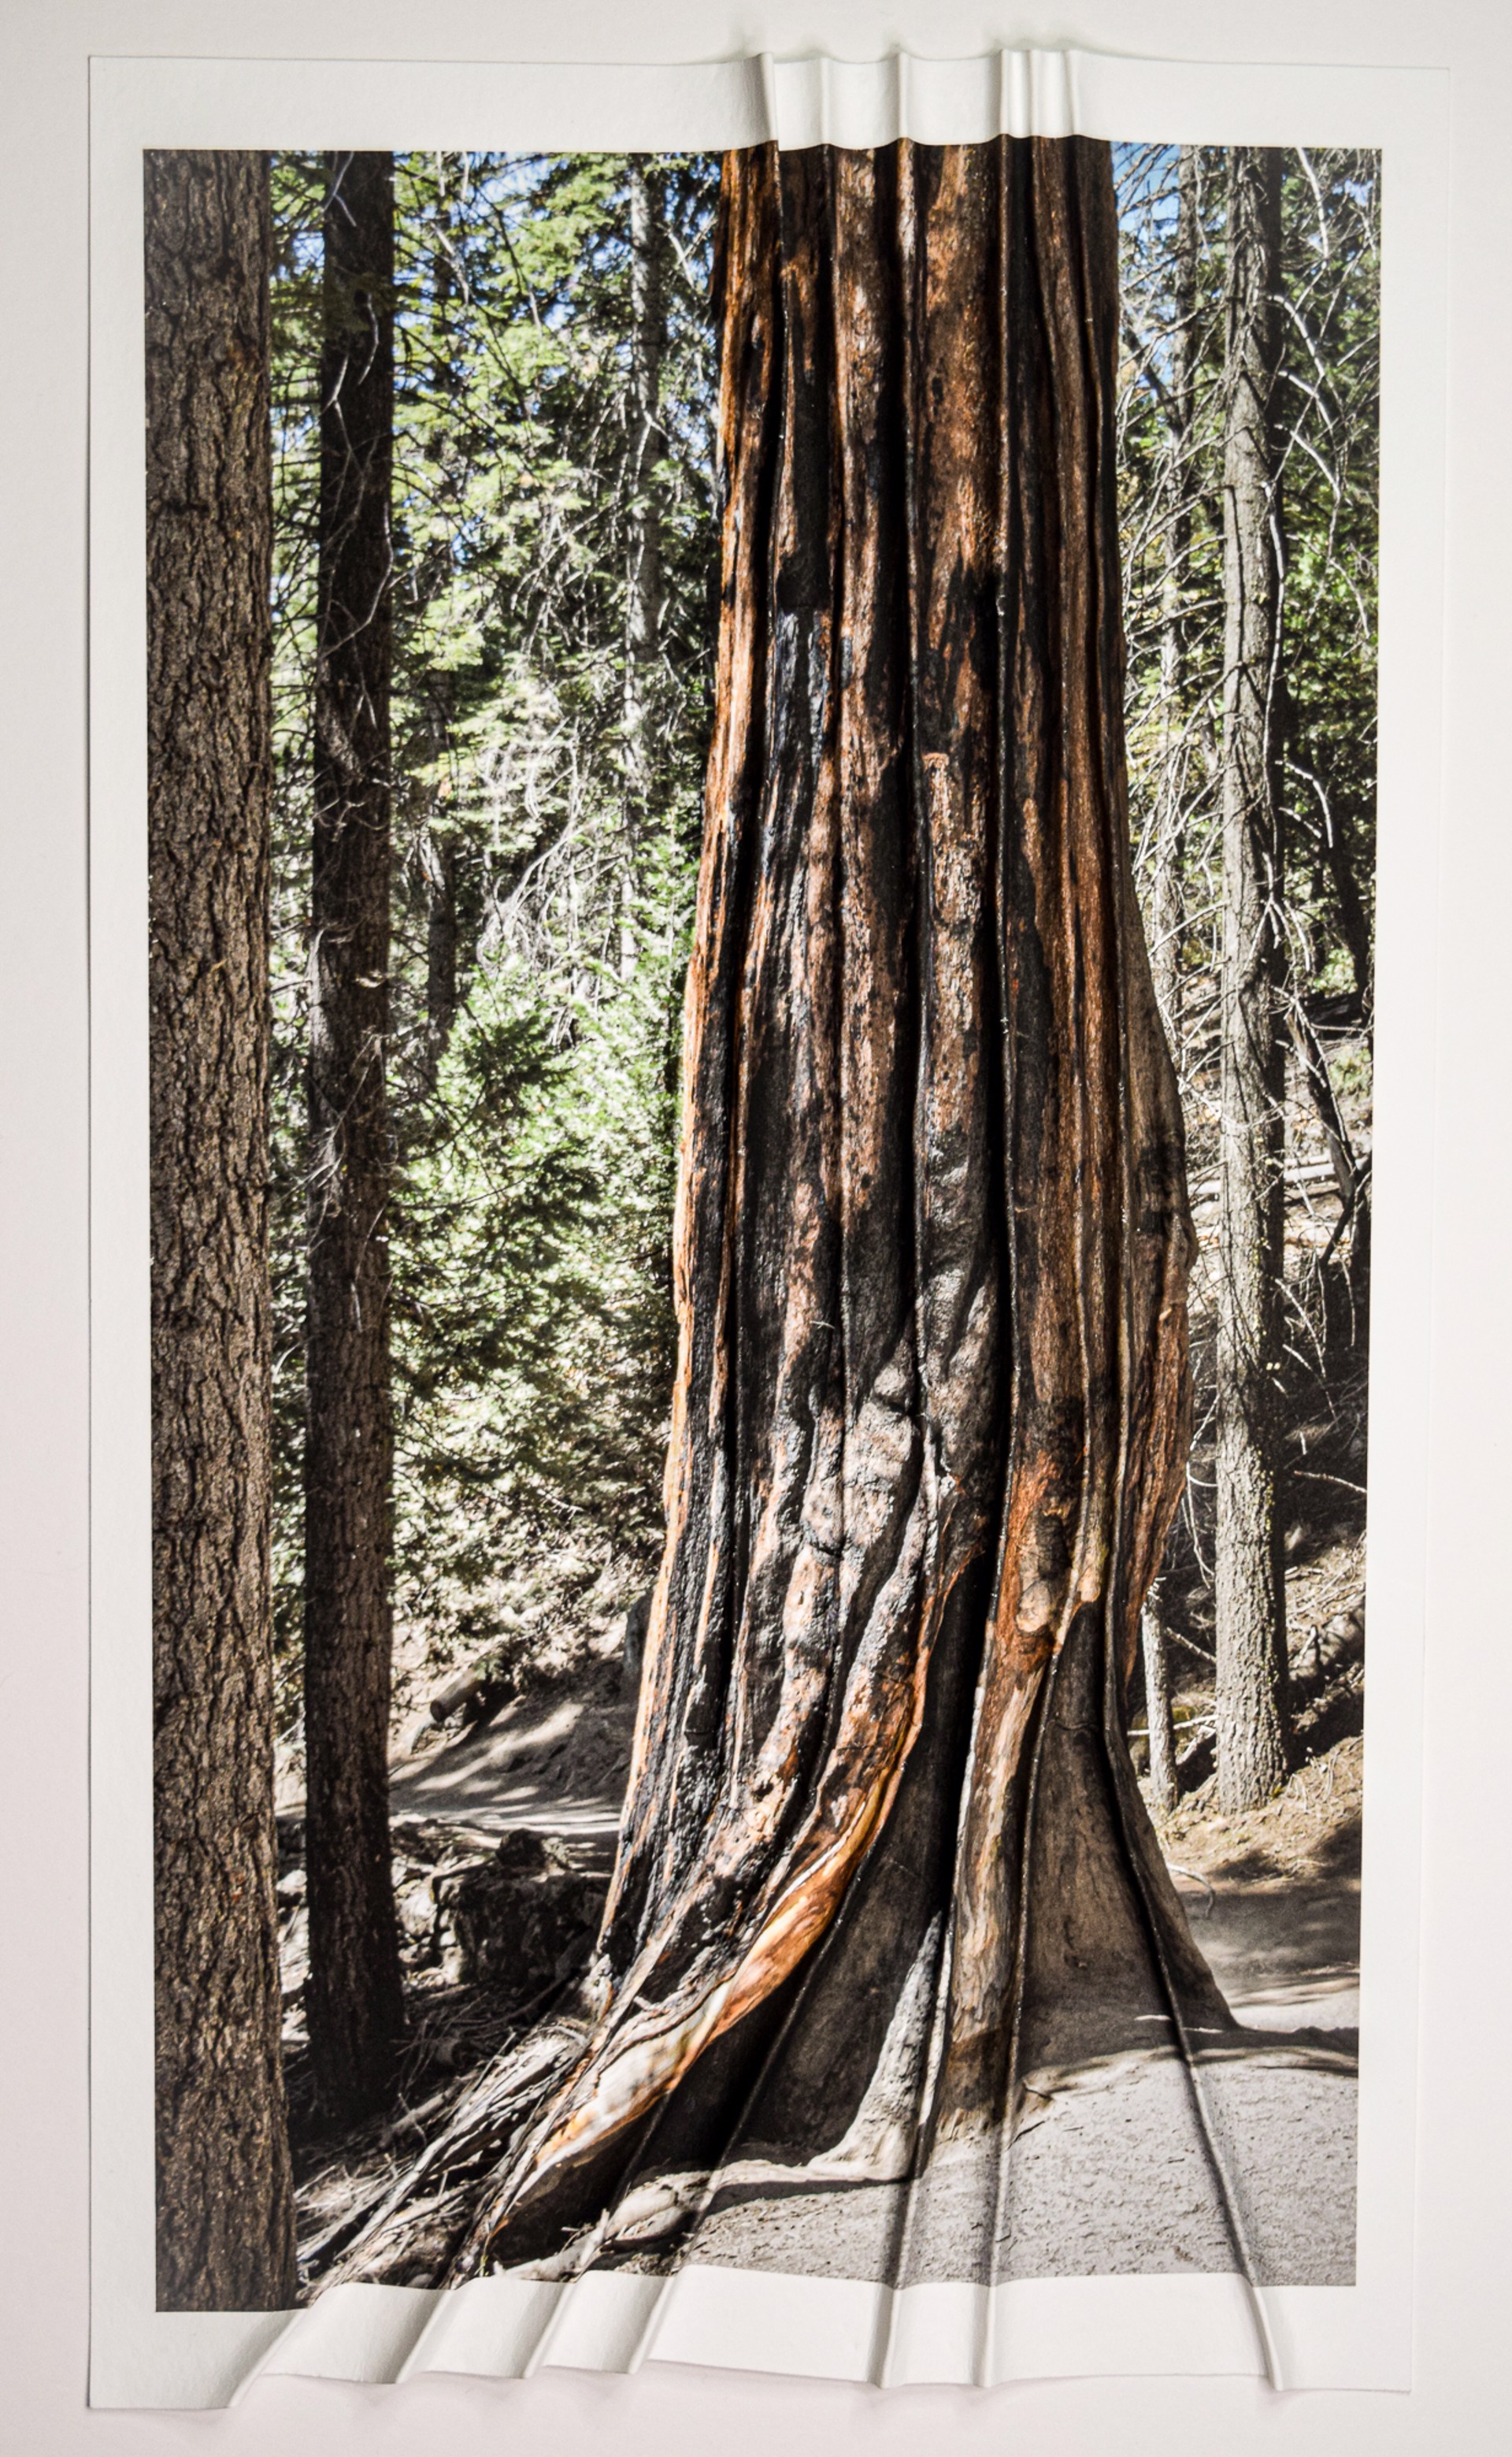 Corrugated Redwood by Debra Achen